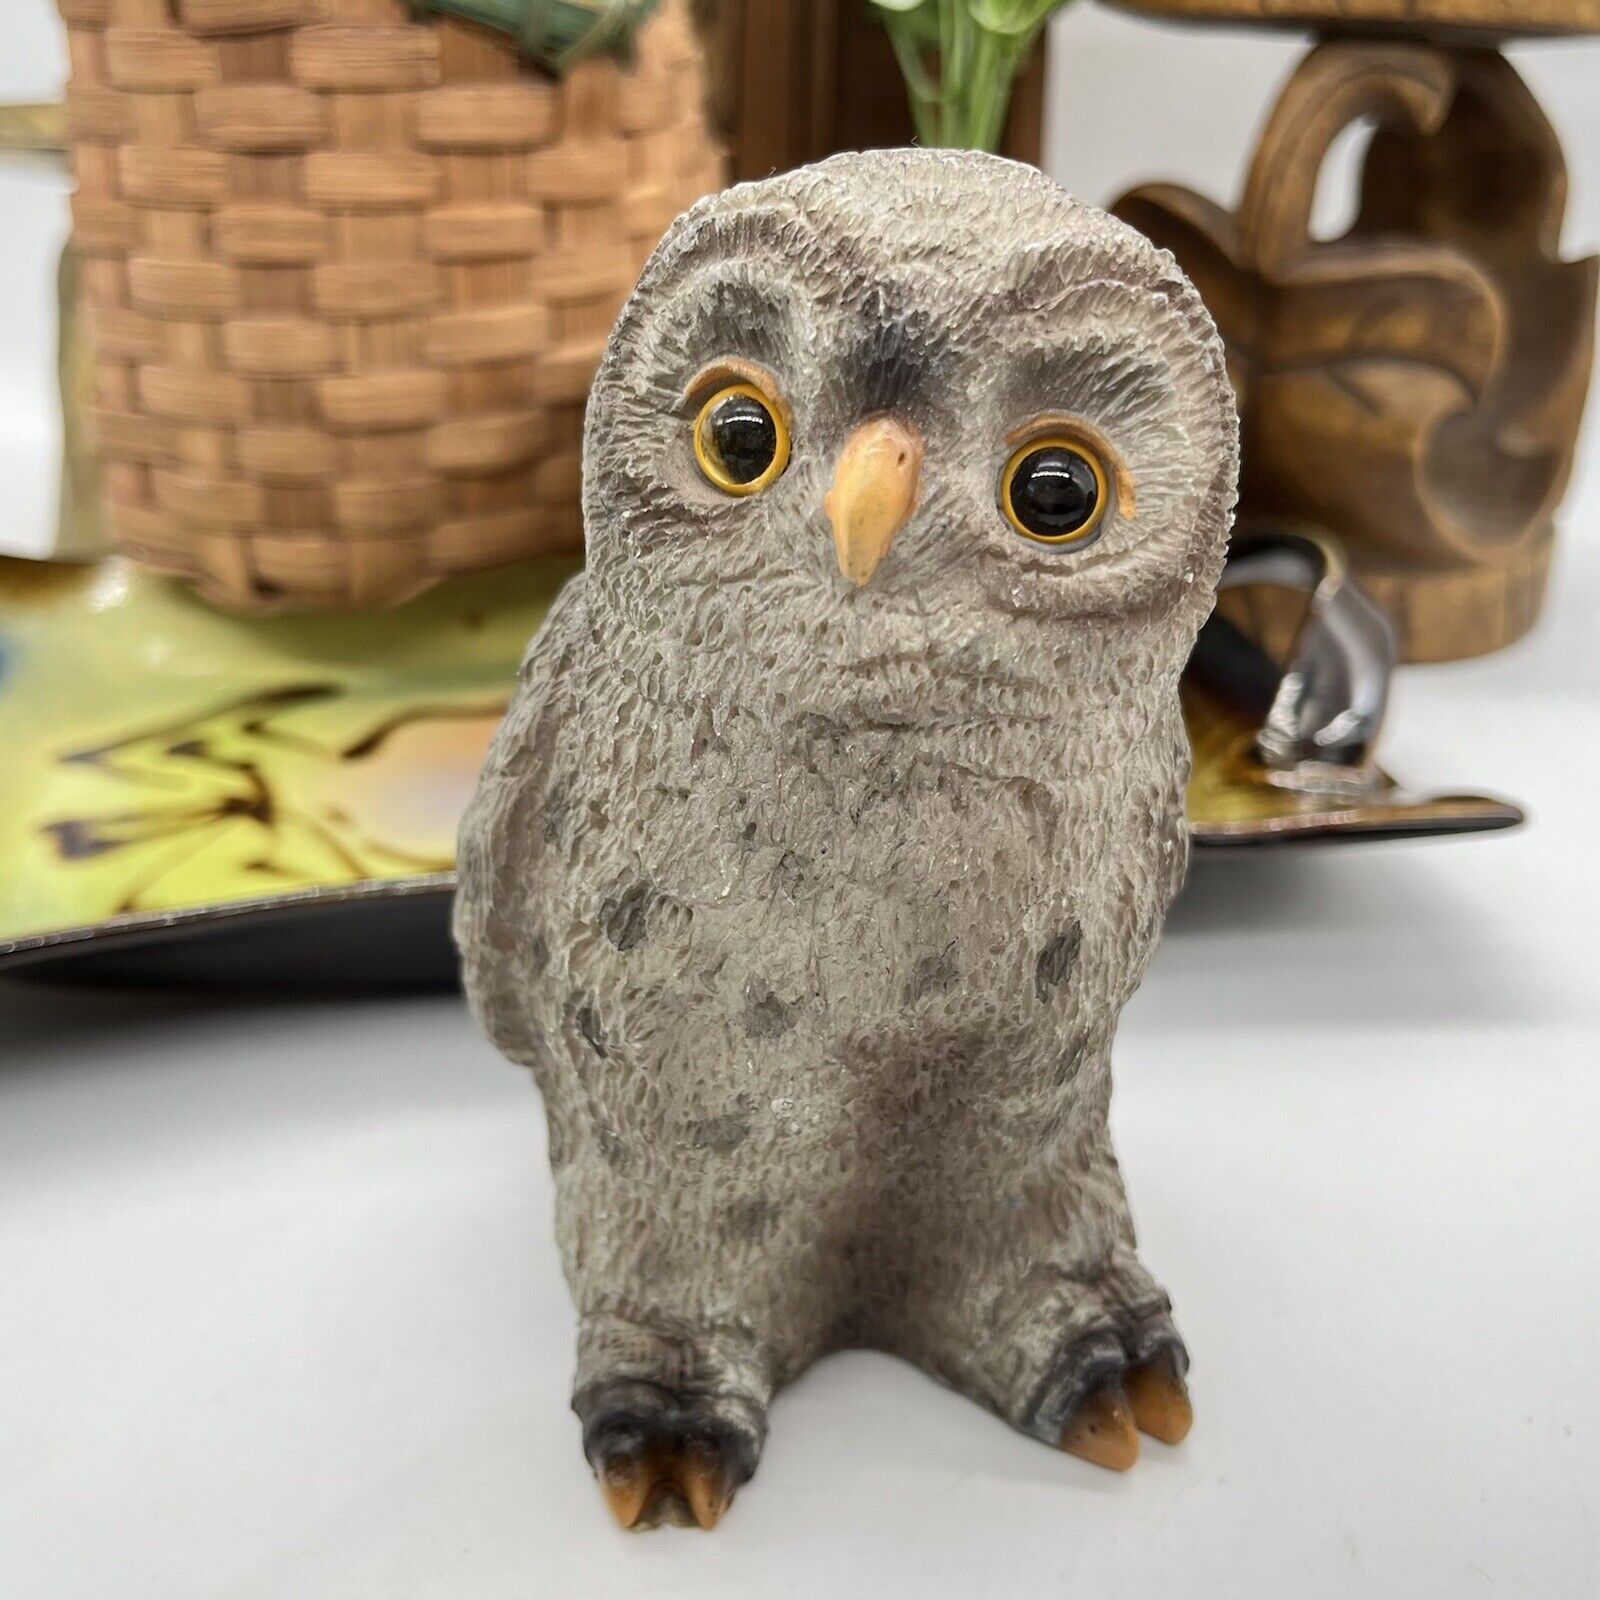 Vintage Jts international baby owl figurine resin/plastic